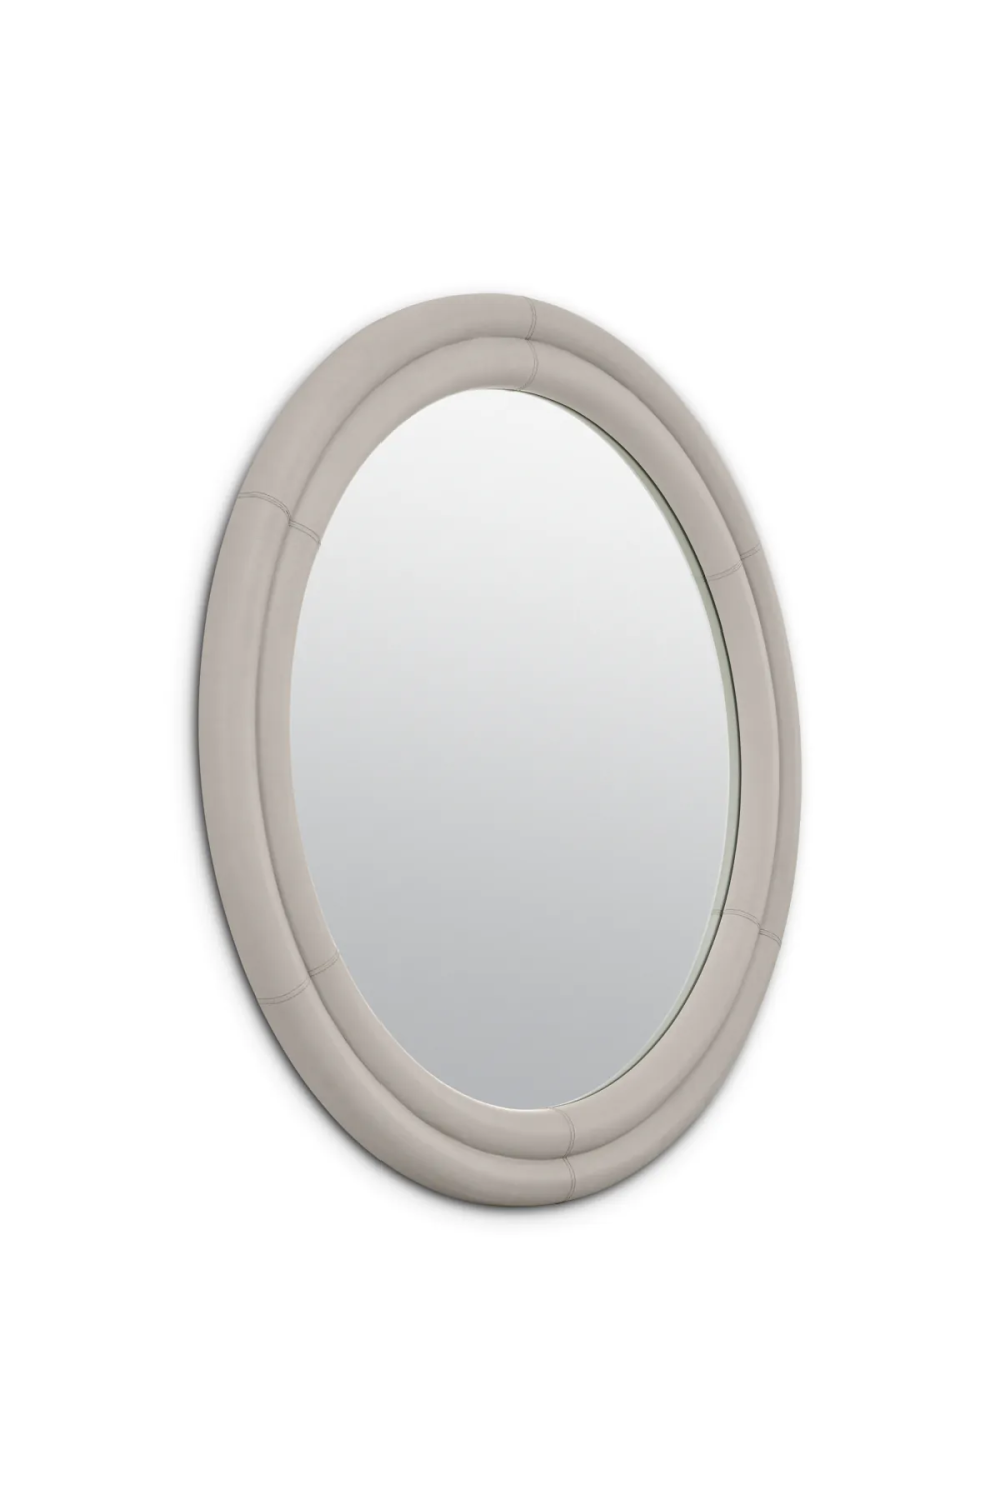 Gray Leather Round Mirror | Eichholtz Bastioni | Oroa.com